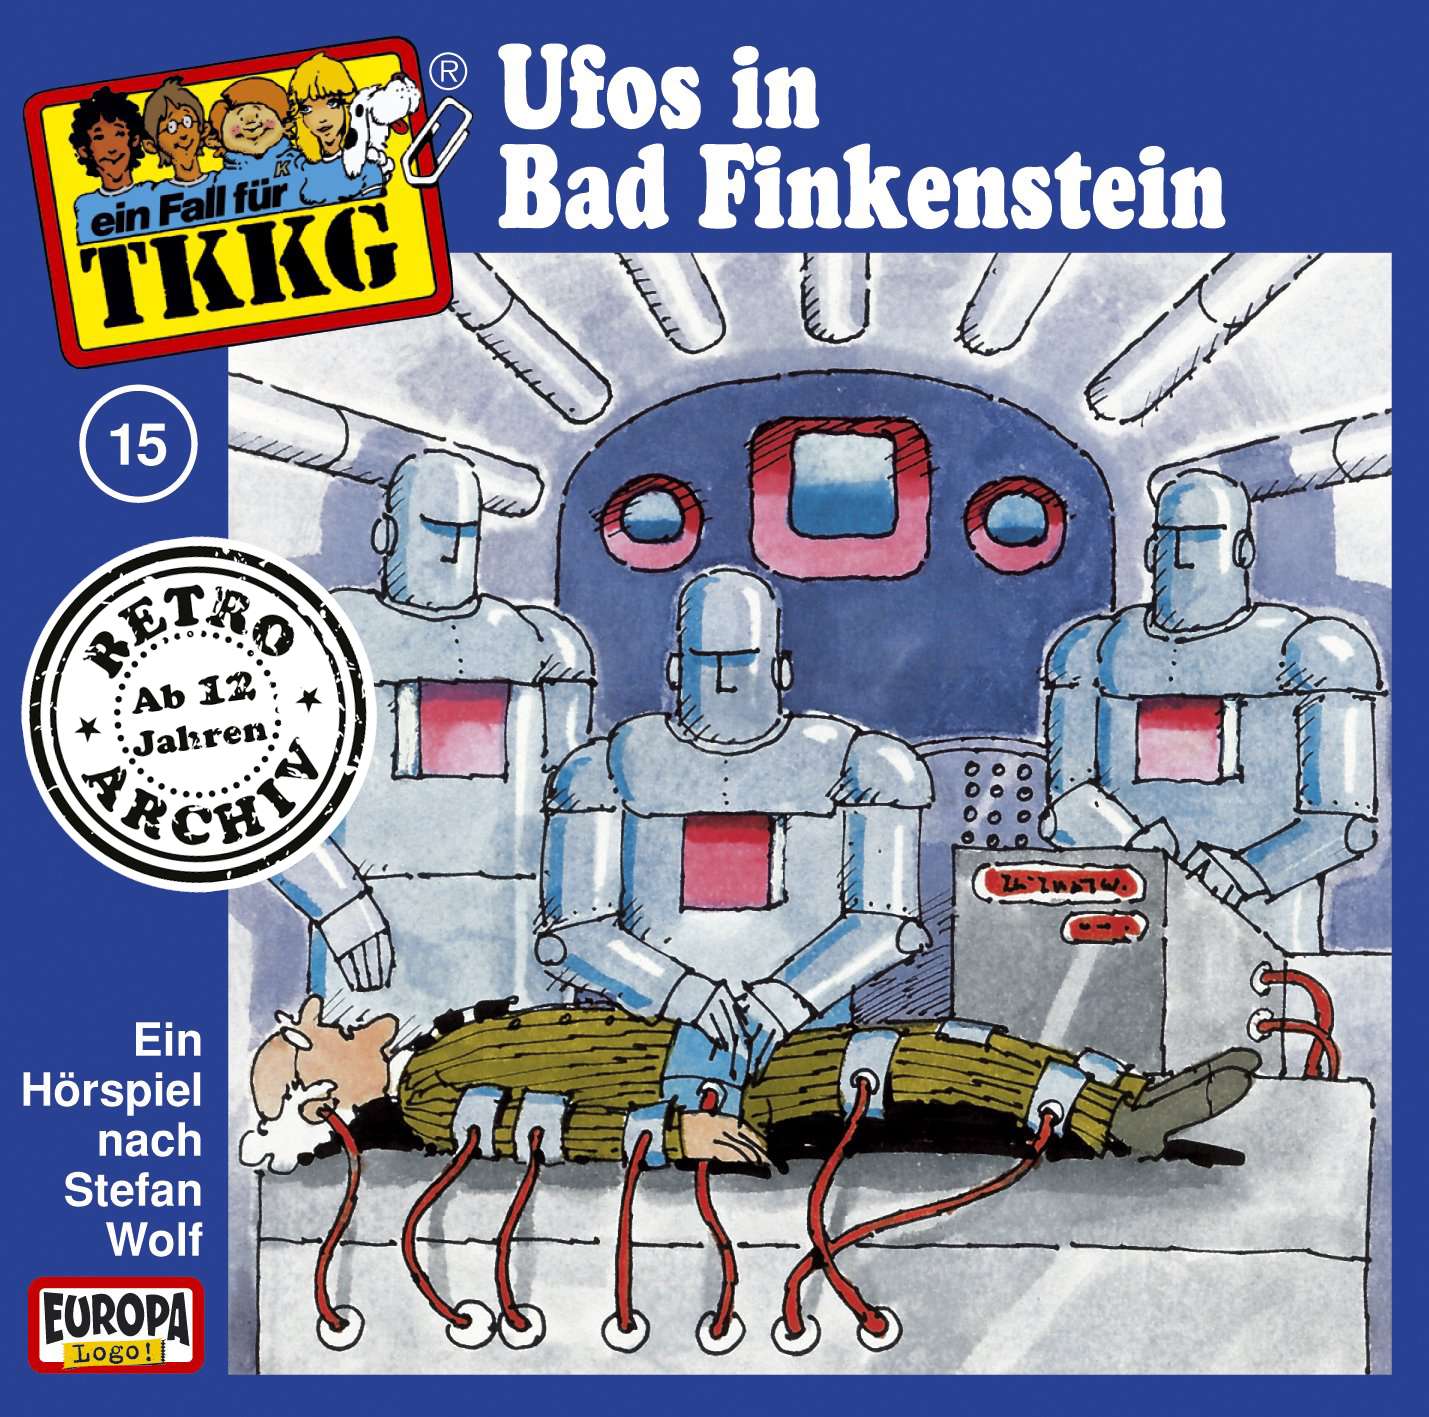 TKKG Retro-Archiv: Ufos in Bad Finkenstein